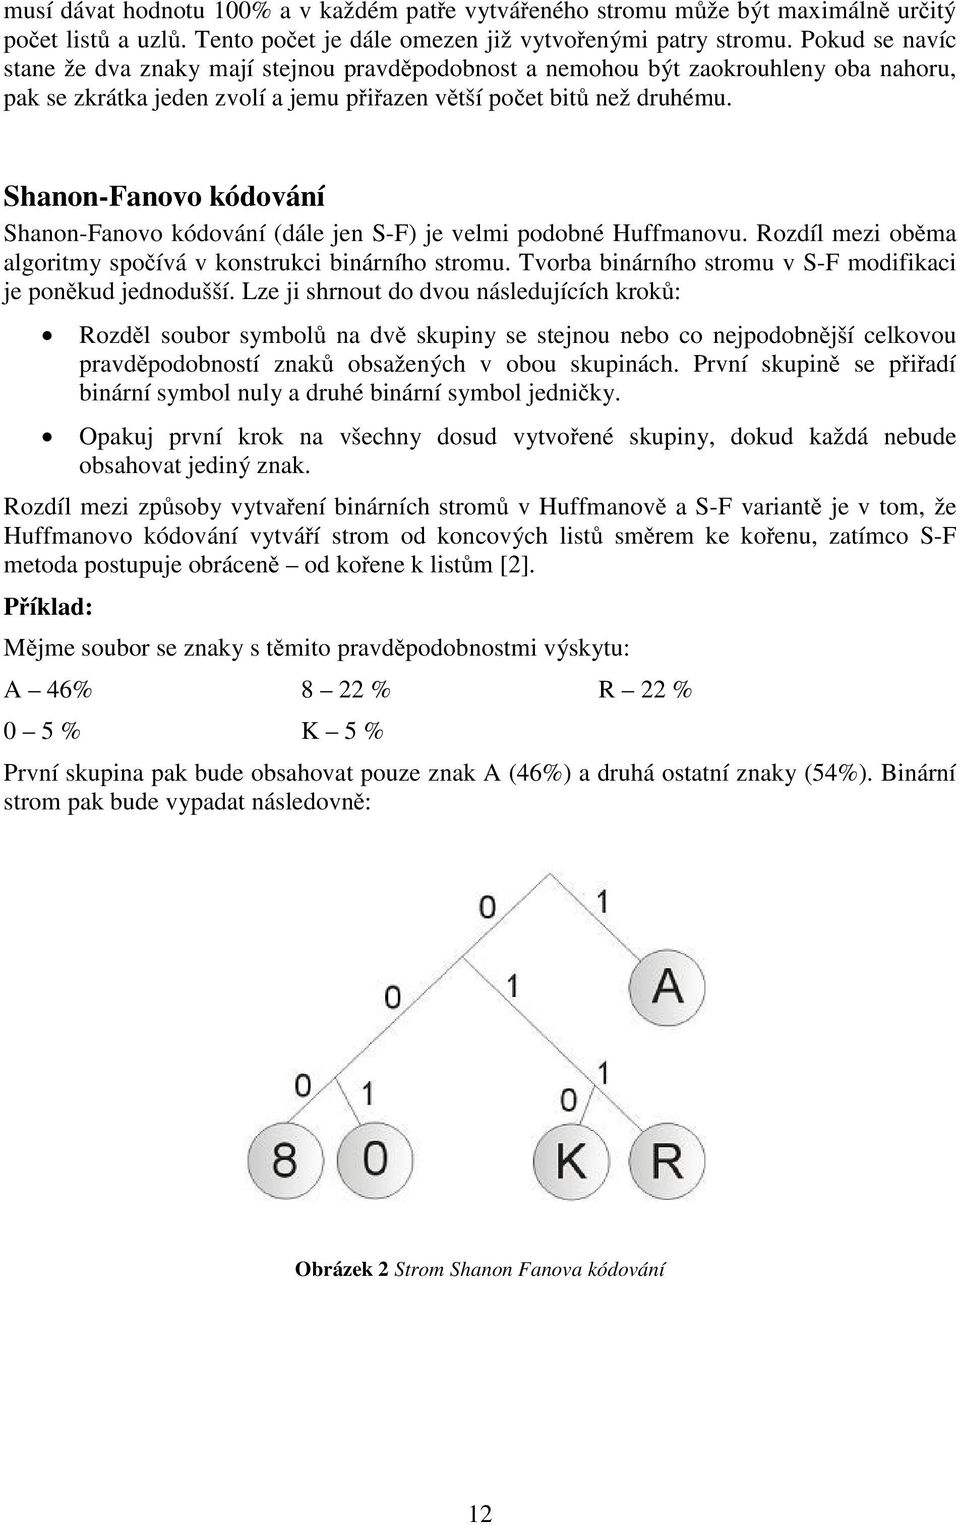 Shanon-Fanovo kódování Shanon-Fanovo kódování (dále jen S-F) je velmi podobné Huffmanovu. Rozdíl mezi oběma algoritmy spočívá v konstrukci binárního stromu.